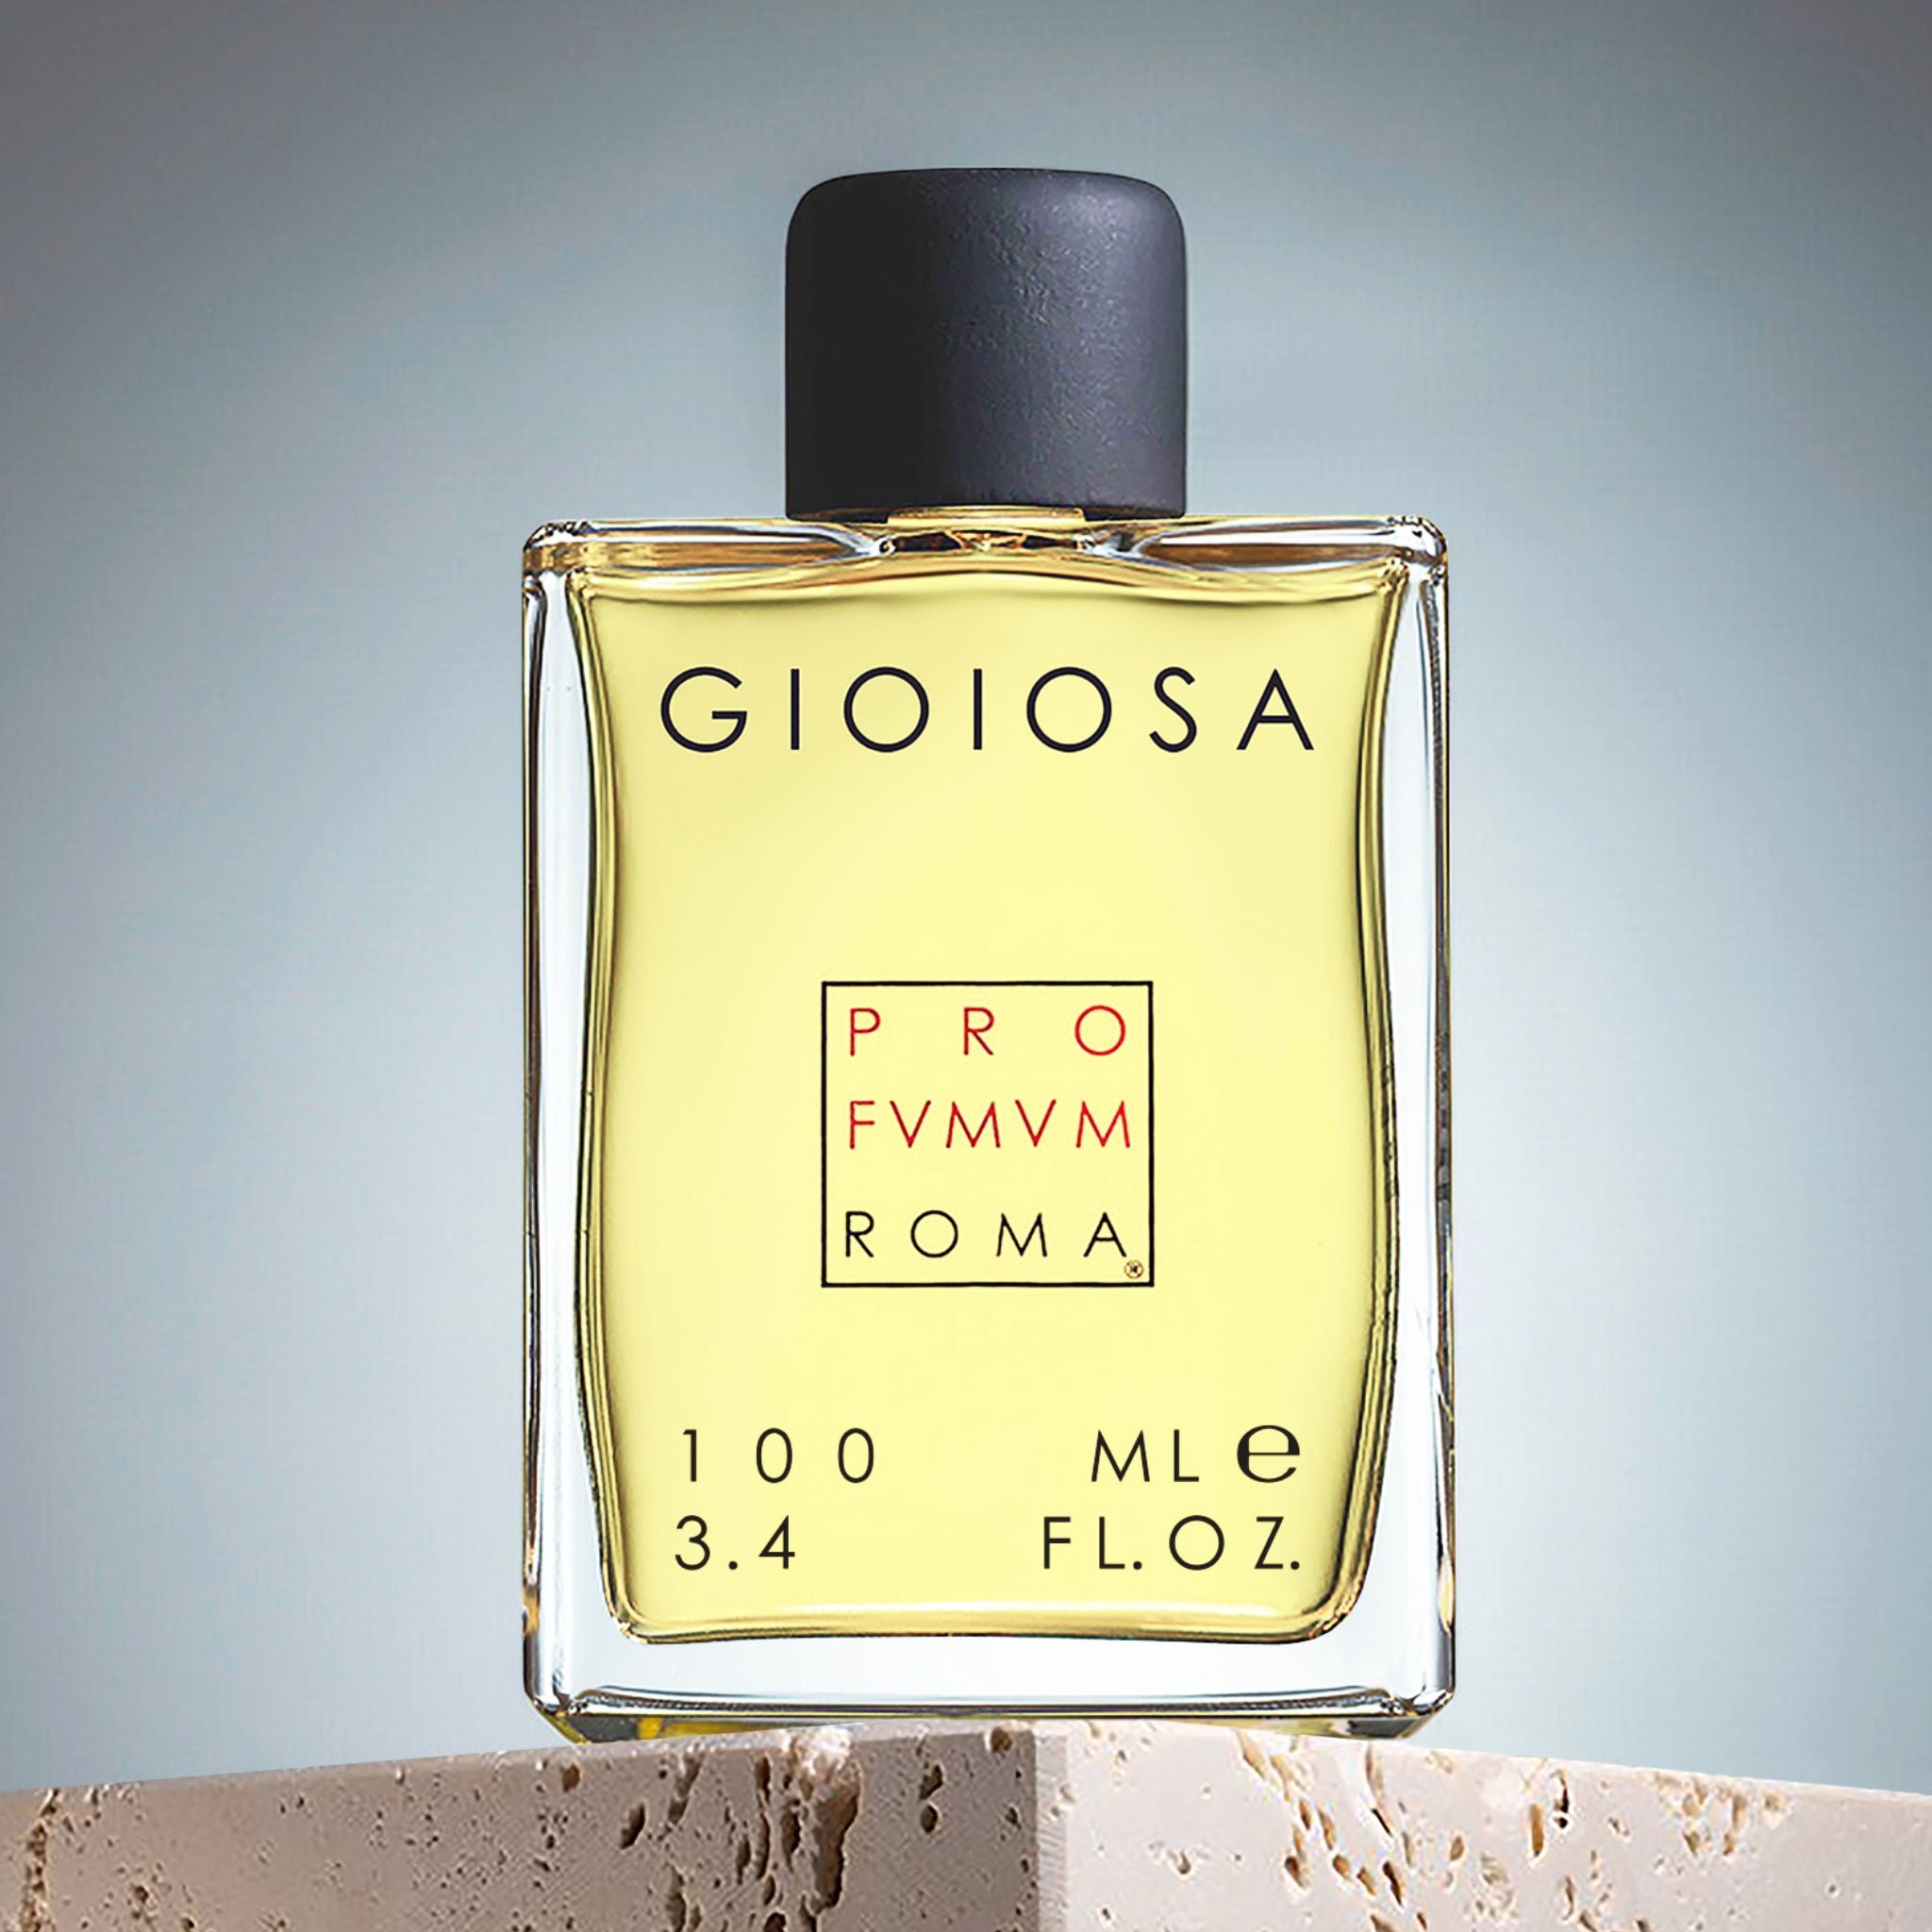 Gioiosa Profumum Roma Perfume